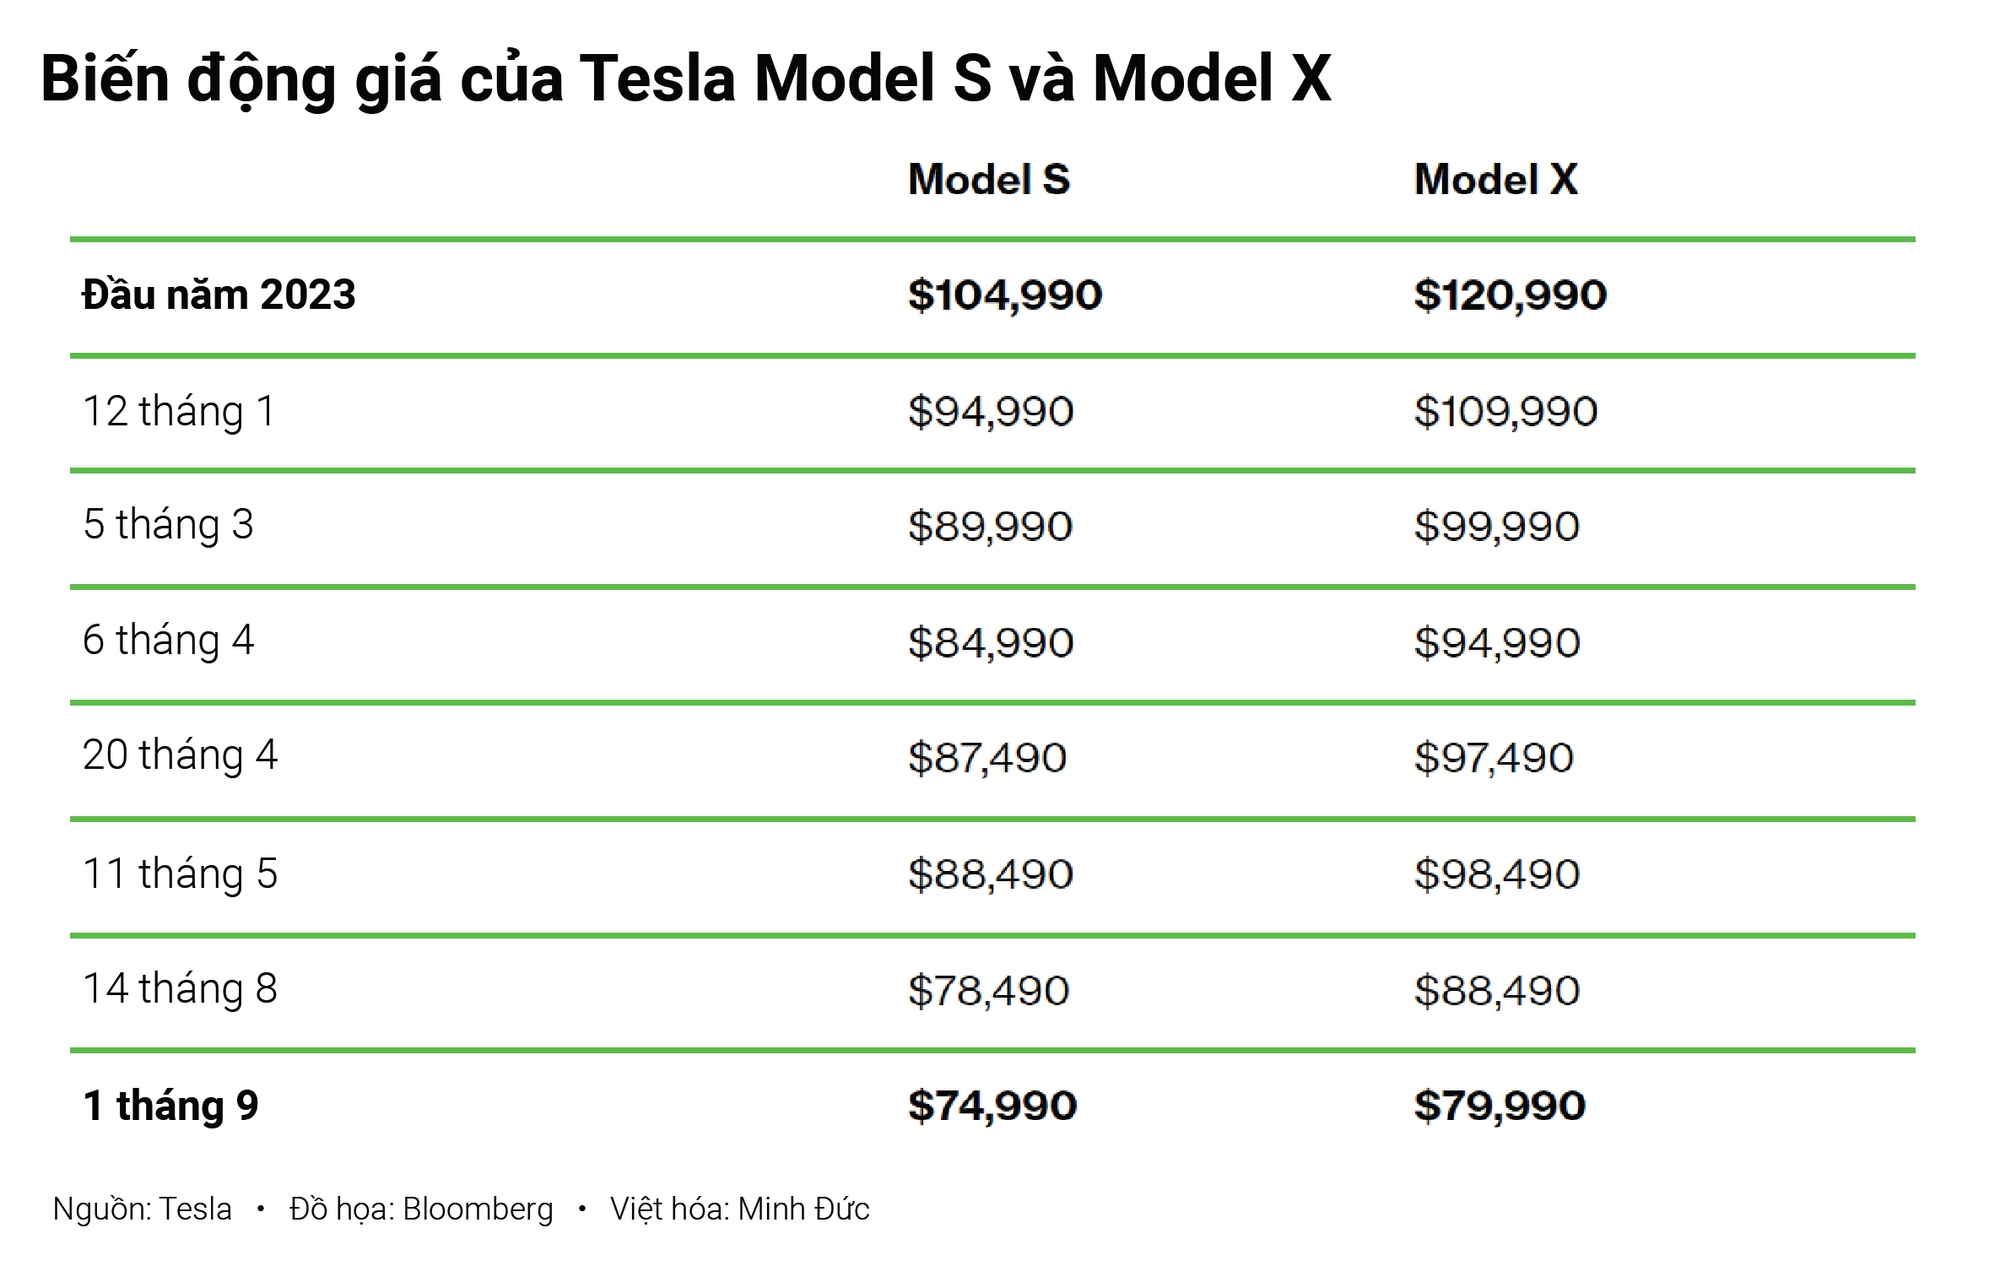 Tesla 'điên cuồng' giảm giá, có mẫu giảm 1 tỷ đồng: Hóa ra vì chung mục tiêu với VinFast - Ảnh 1.